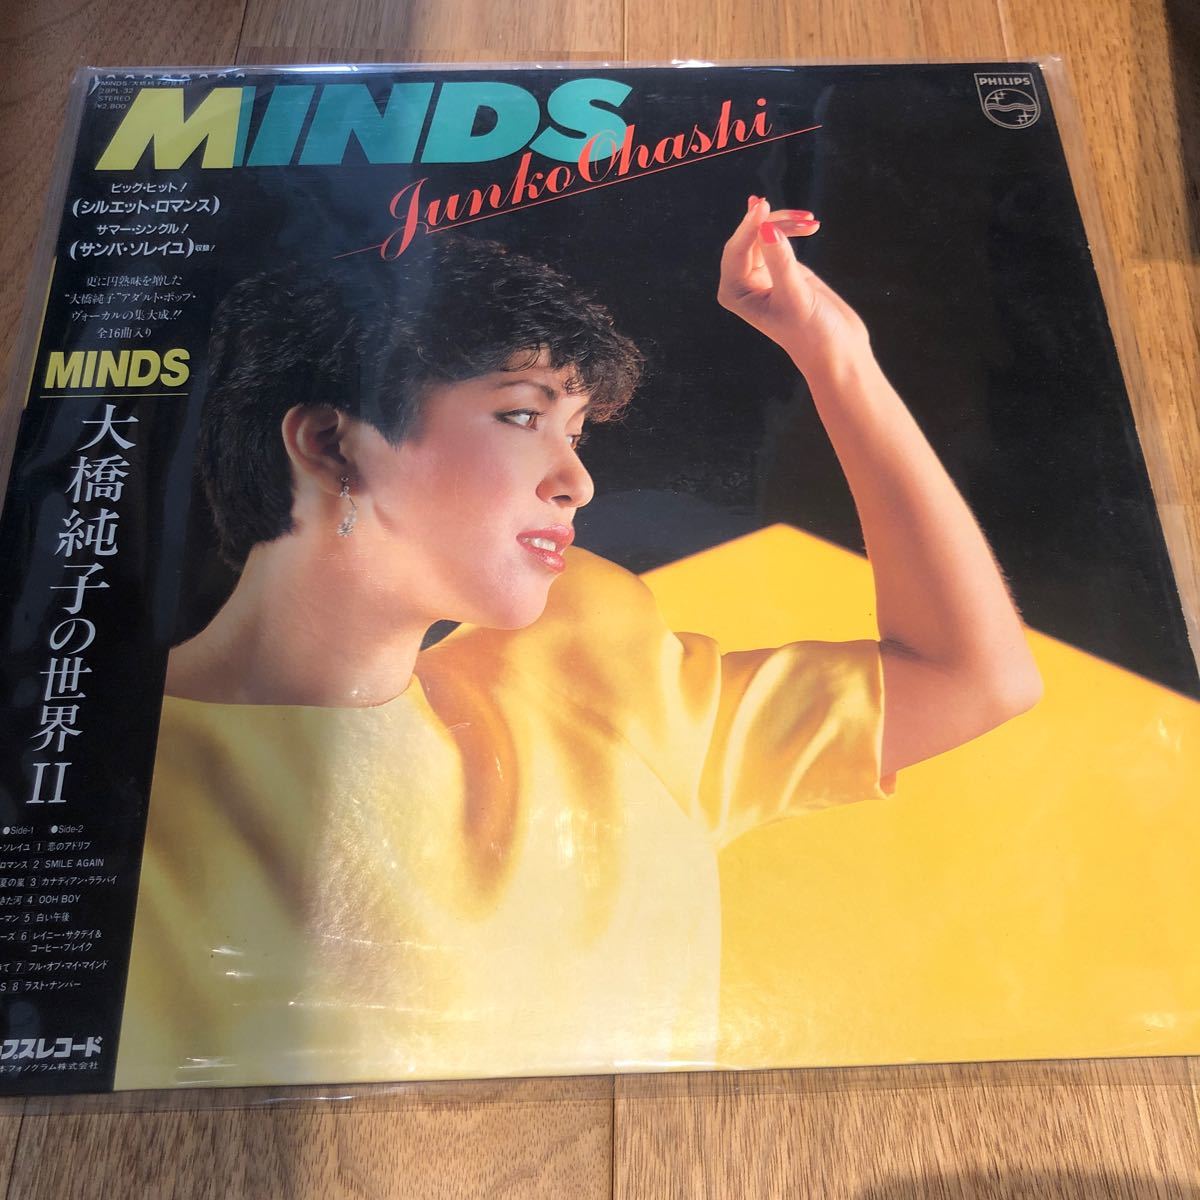 大橋純子 - MINDS LP 帯付_画像1